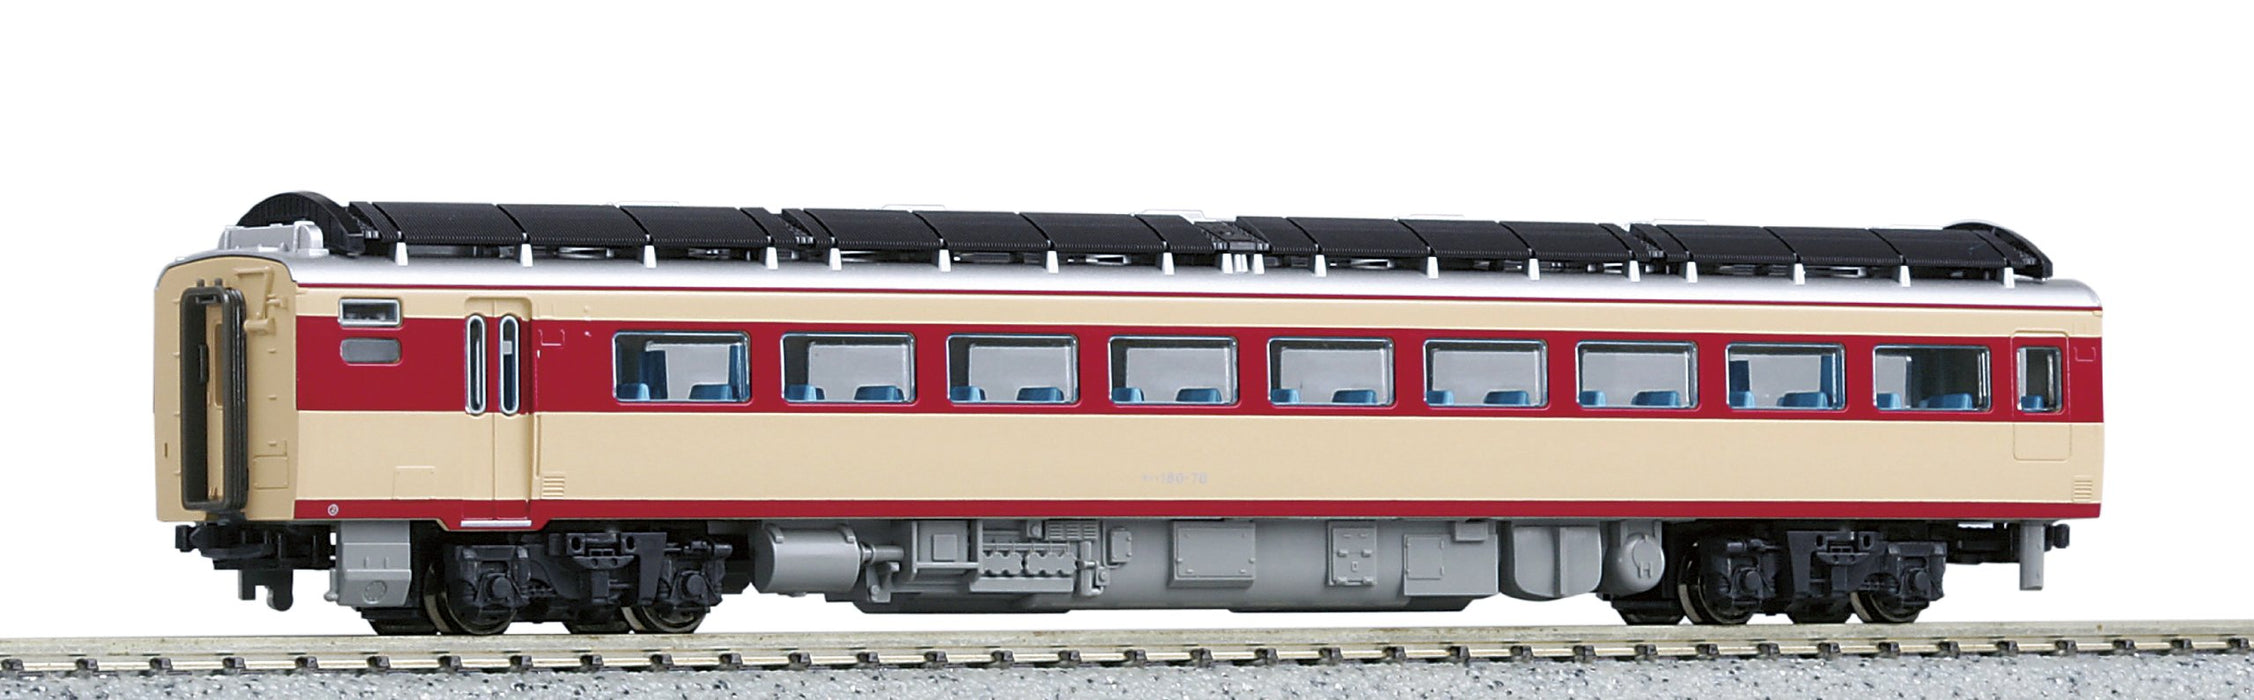 Kato Diesel Car Railway Model - N Gauge Kiha180 M 6082